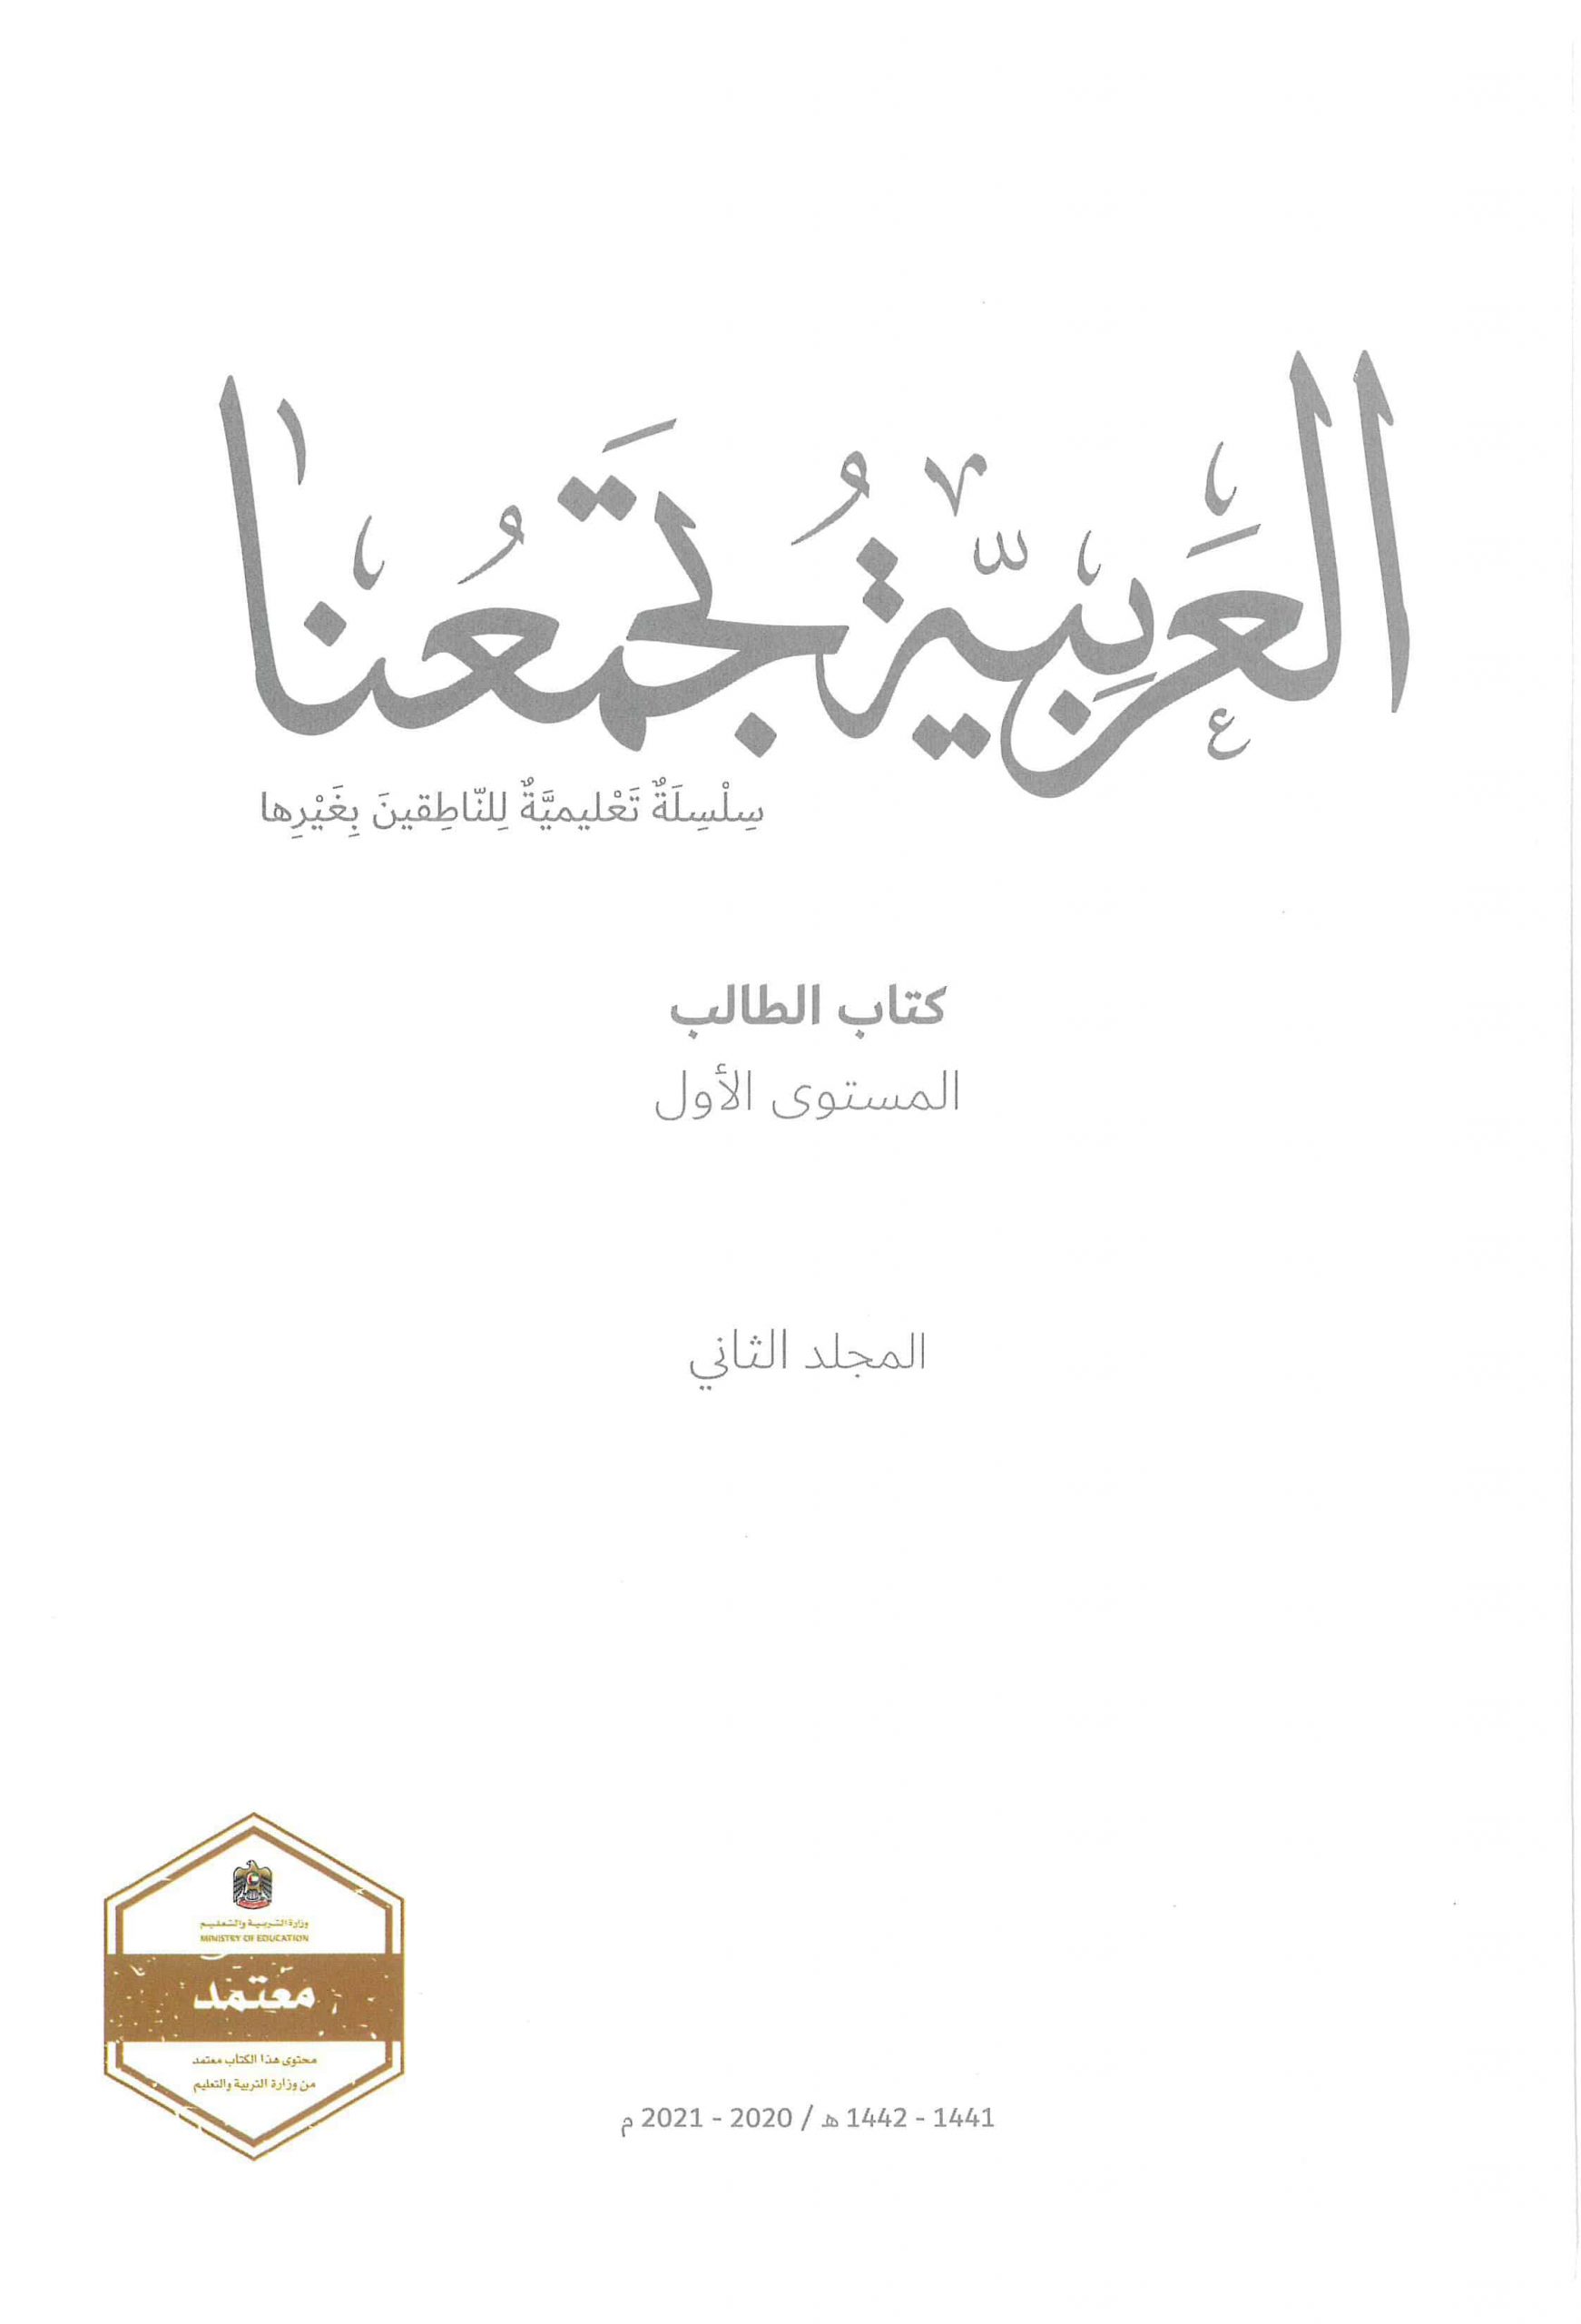 كتاب الطالب الفصل الدراسي الثاني 2020-2021 لغير الناطقين بها الصف الاول مادة اللغة العربية 